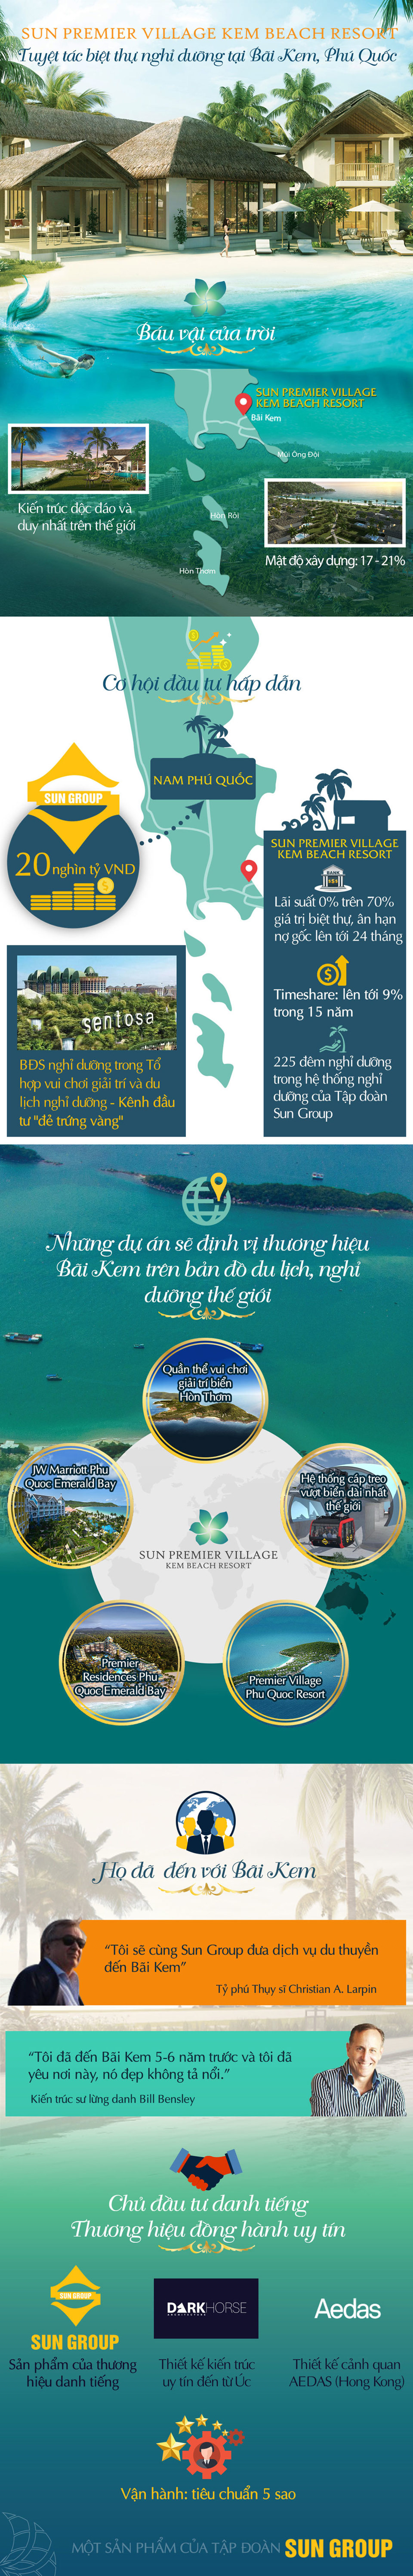 Chọn Sun Premier Village Kem Beach Resort, “tiêu tiền” khôn ngoan như tỷ phú - Ảnh 1